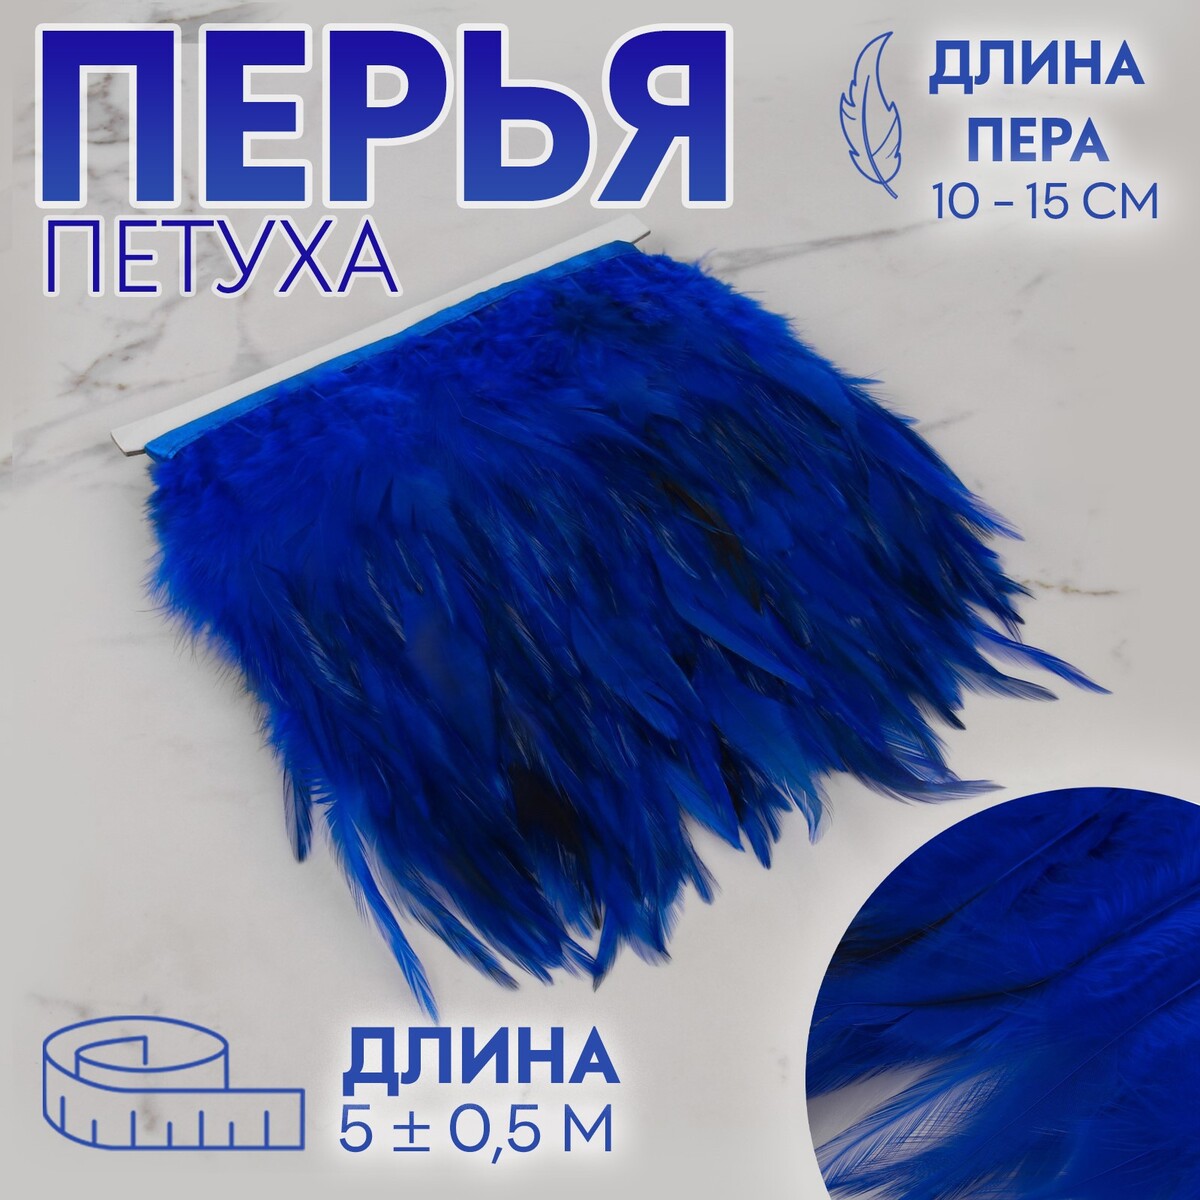 Тесьма с перьями петуха, 10-15 см, 5 ± 0,5 м, цвет синий тесьма с перьями марабу 8 10 см 5 ± 0 5 м пудровый